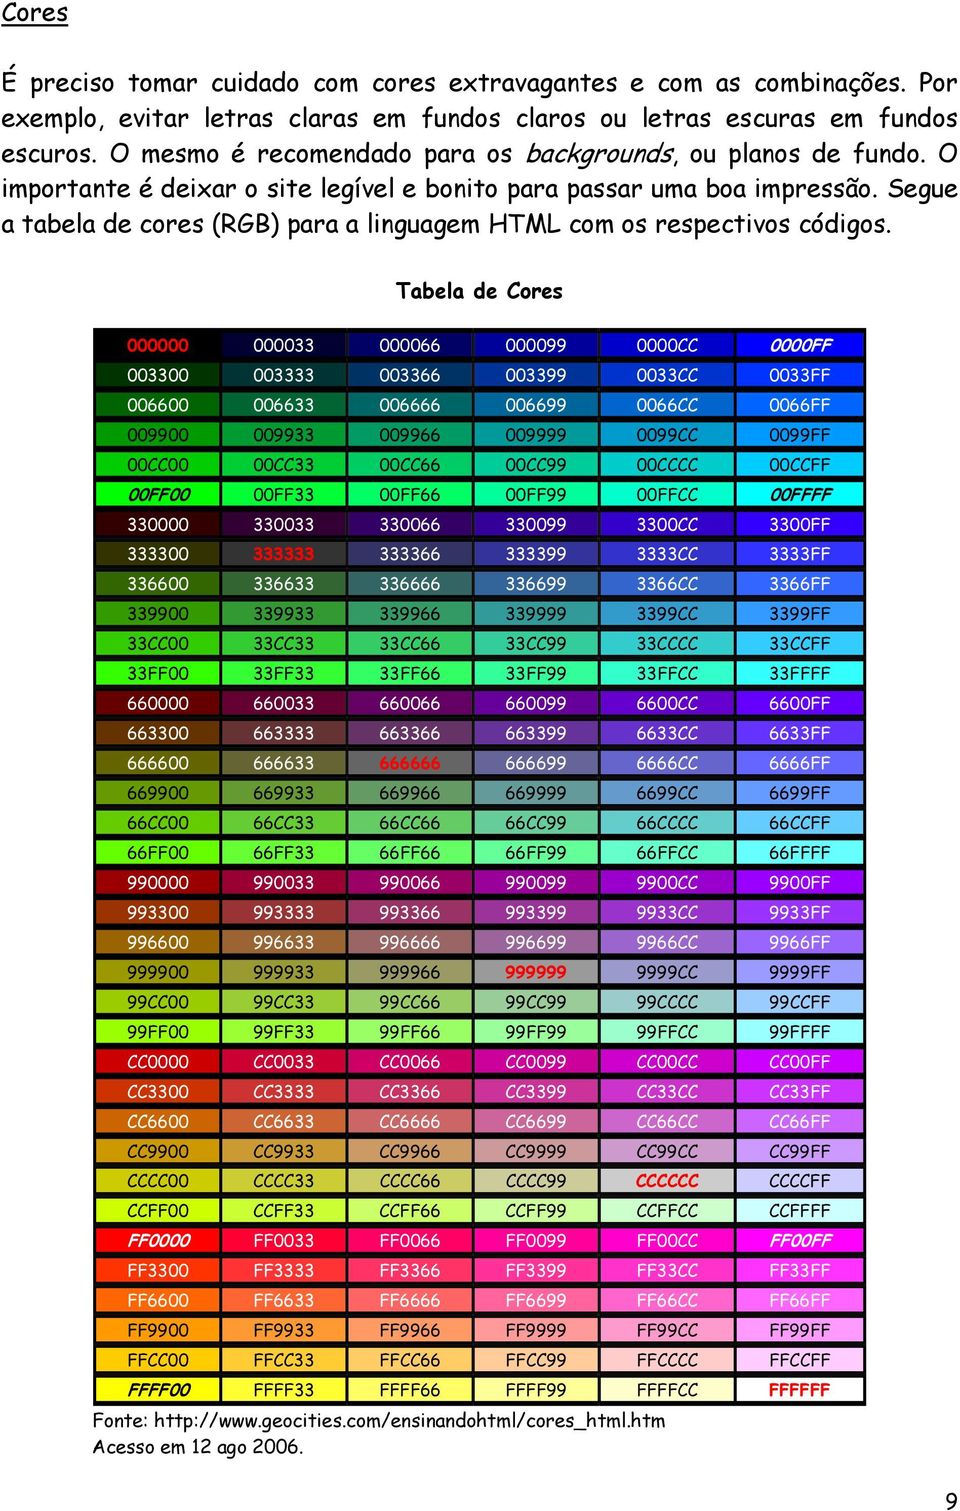 Segue a tabela de cores (RGB) para a linguagem HTML com os respectivos códigos.